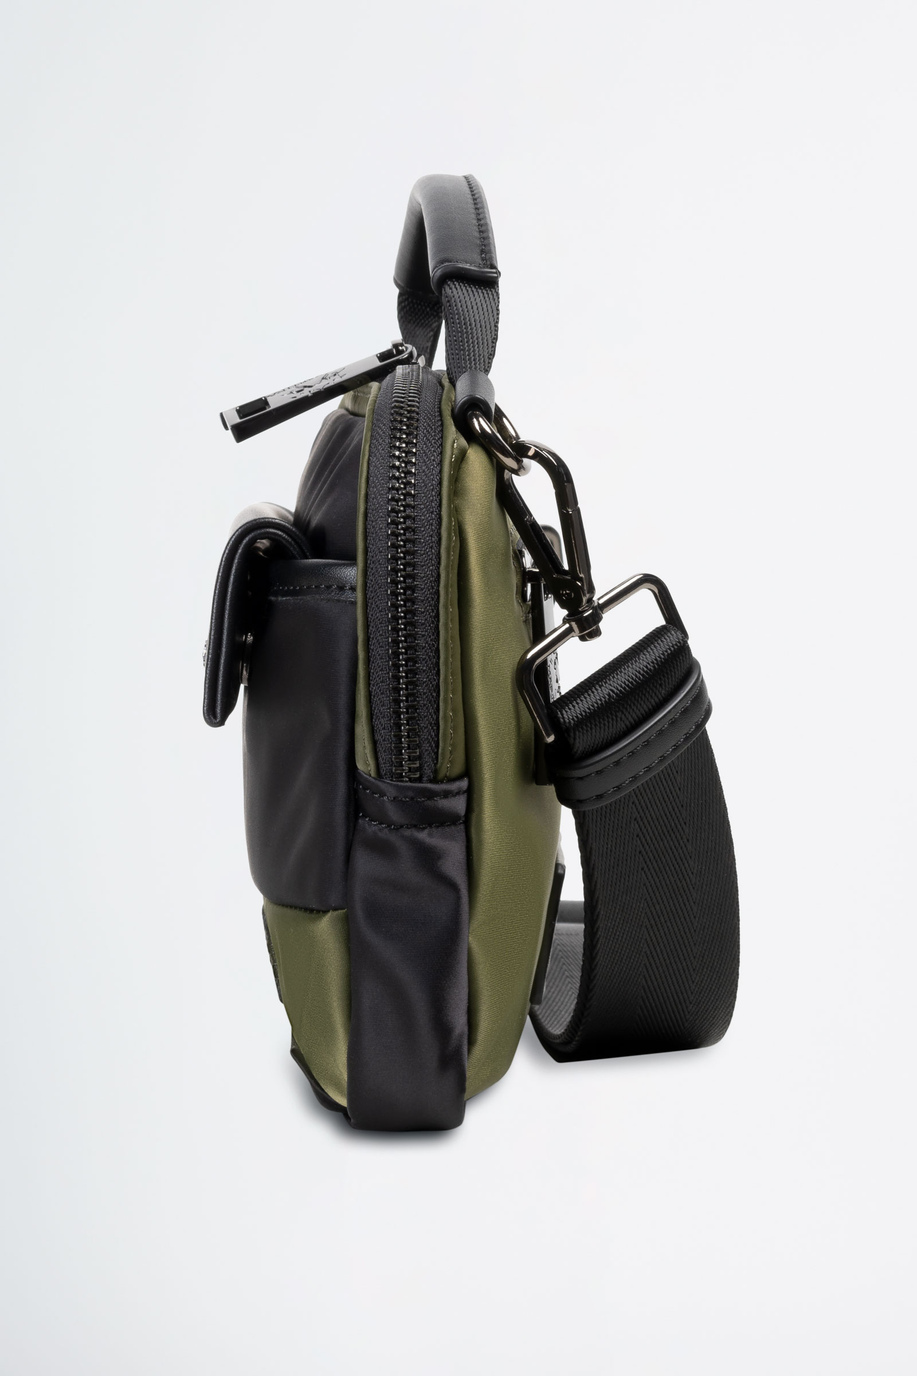 Shoulder bag in fabric - Man leather goods | La Martina - Official Online Shop